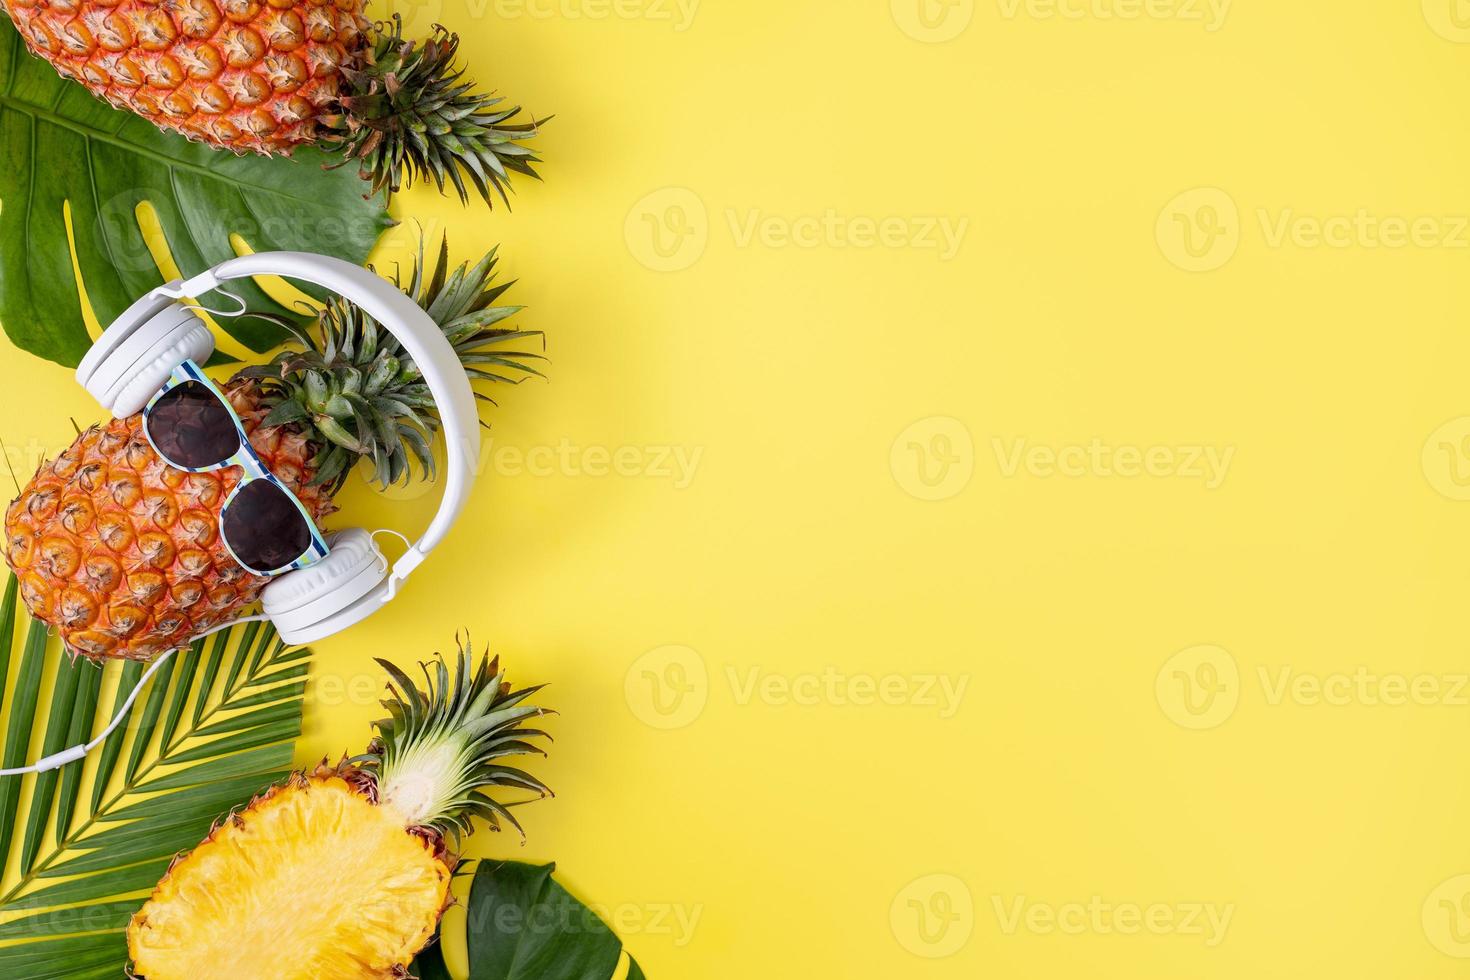 rolig ananas bär vita hörlurar, lyssna på musik, isolerad på gul bakgrund med tropiska palmblad, ovanifrån, platt låg designkoncept. foto